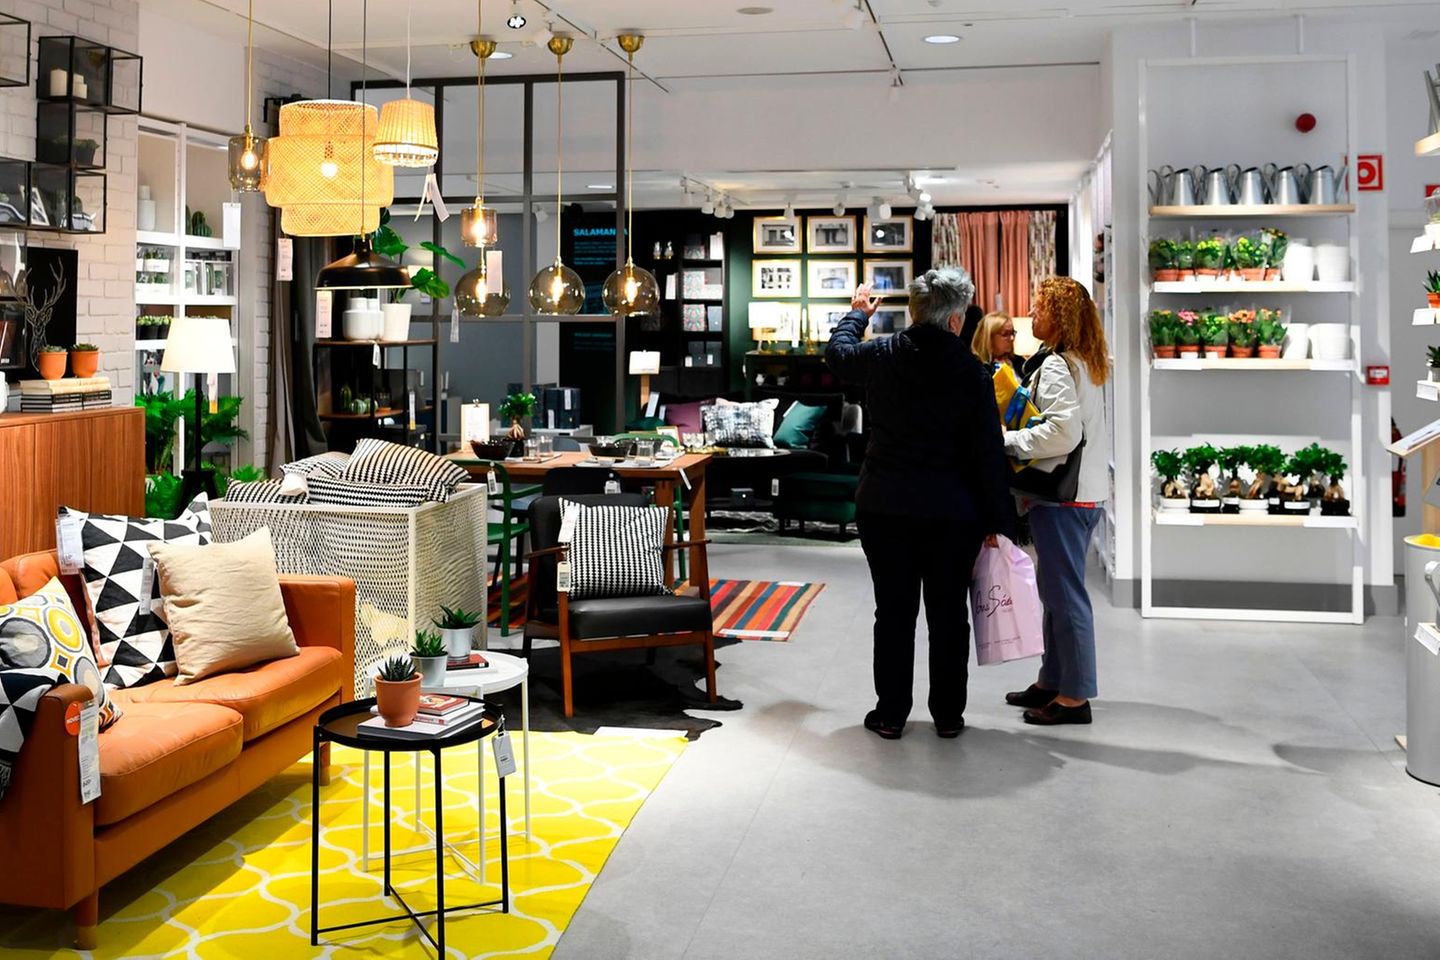 Möbelriese Ikea platziert seit Jahrzehnten Möbel in Europas Wohnungen und Häusern